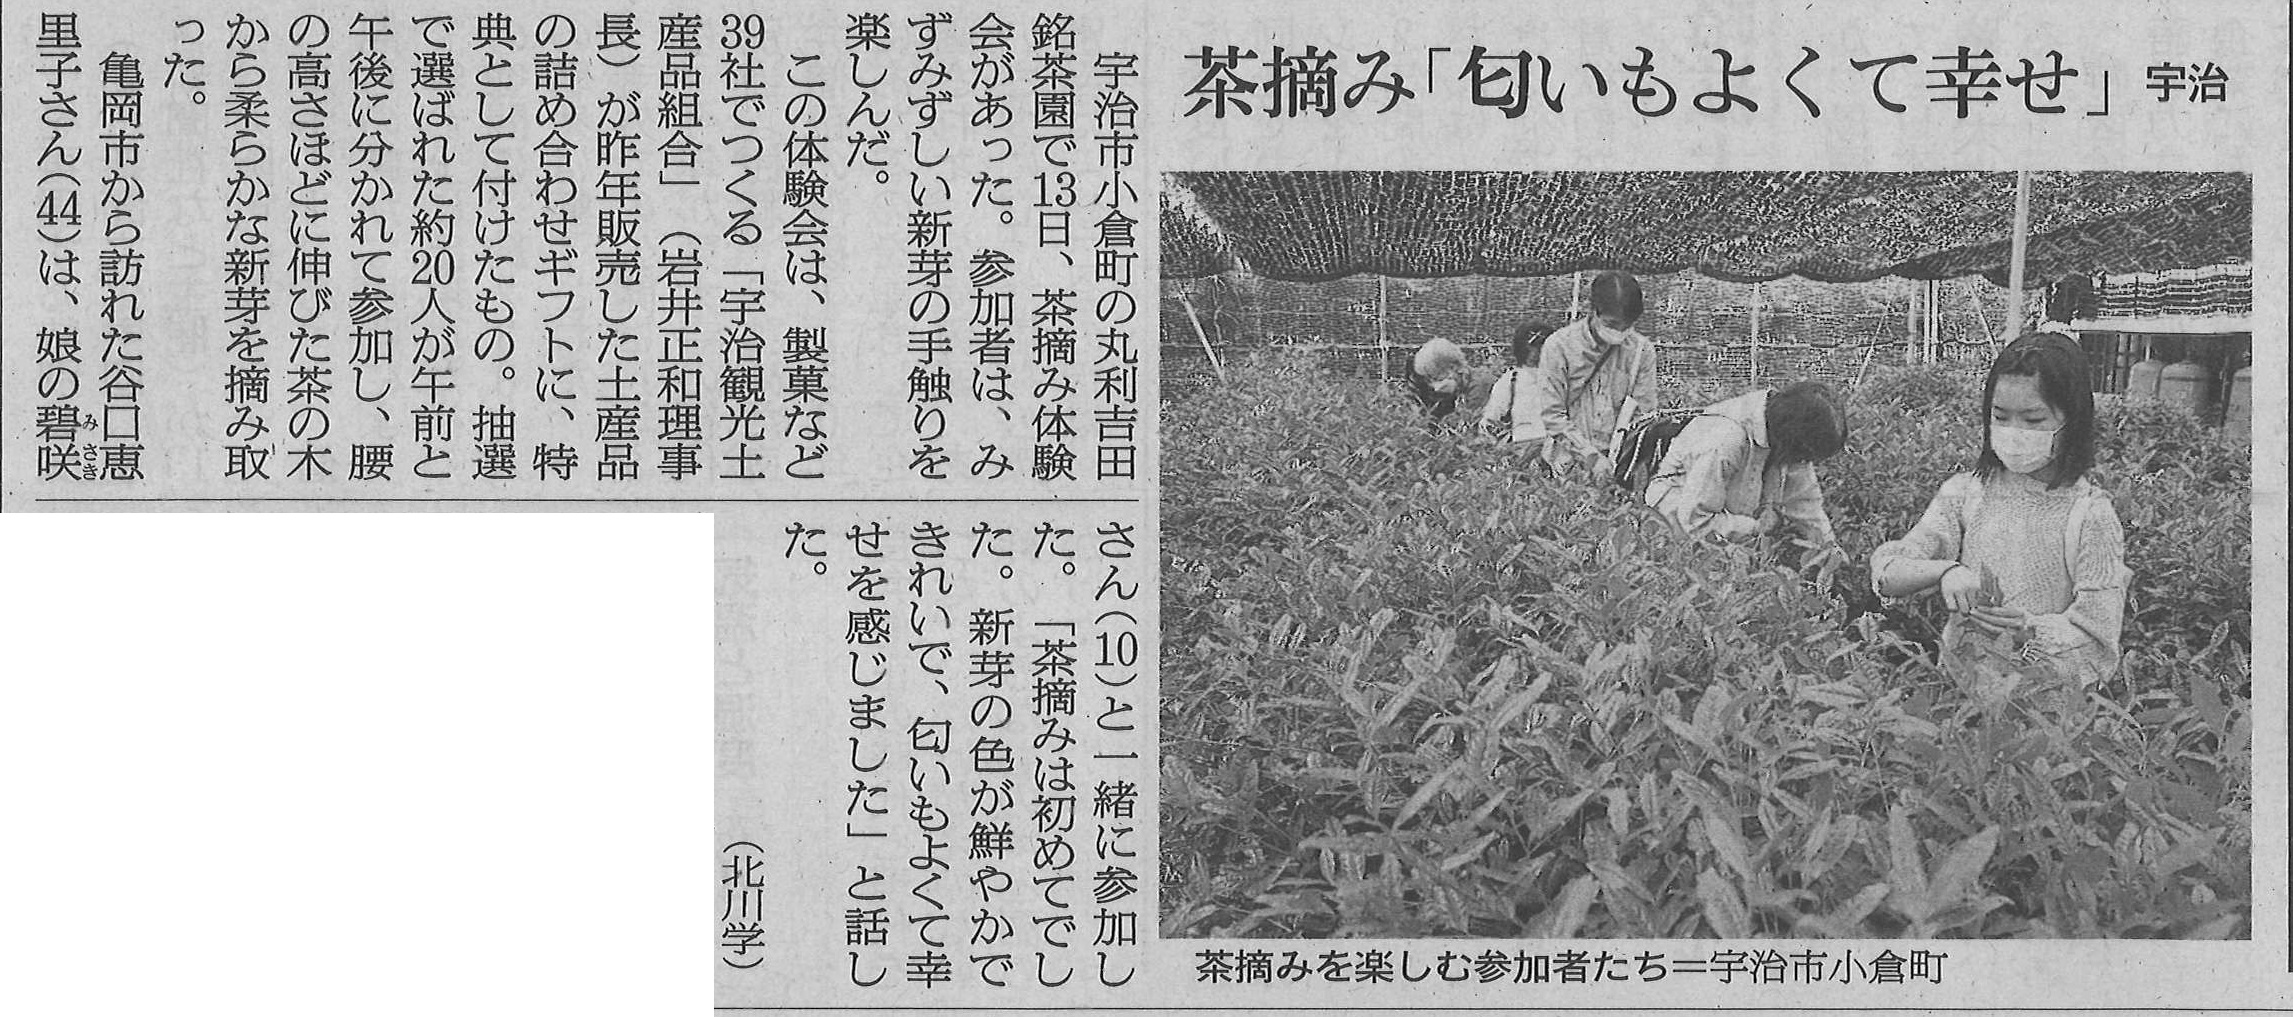 5月14日 朝日新聞にて、宇治観光土産品組合ギフト購入特典の茶摘み体験の様子が掲載